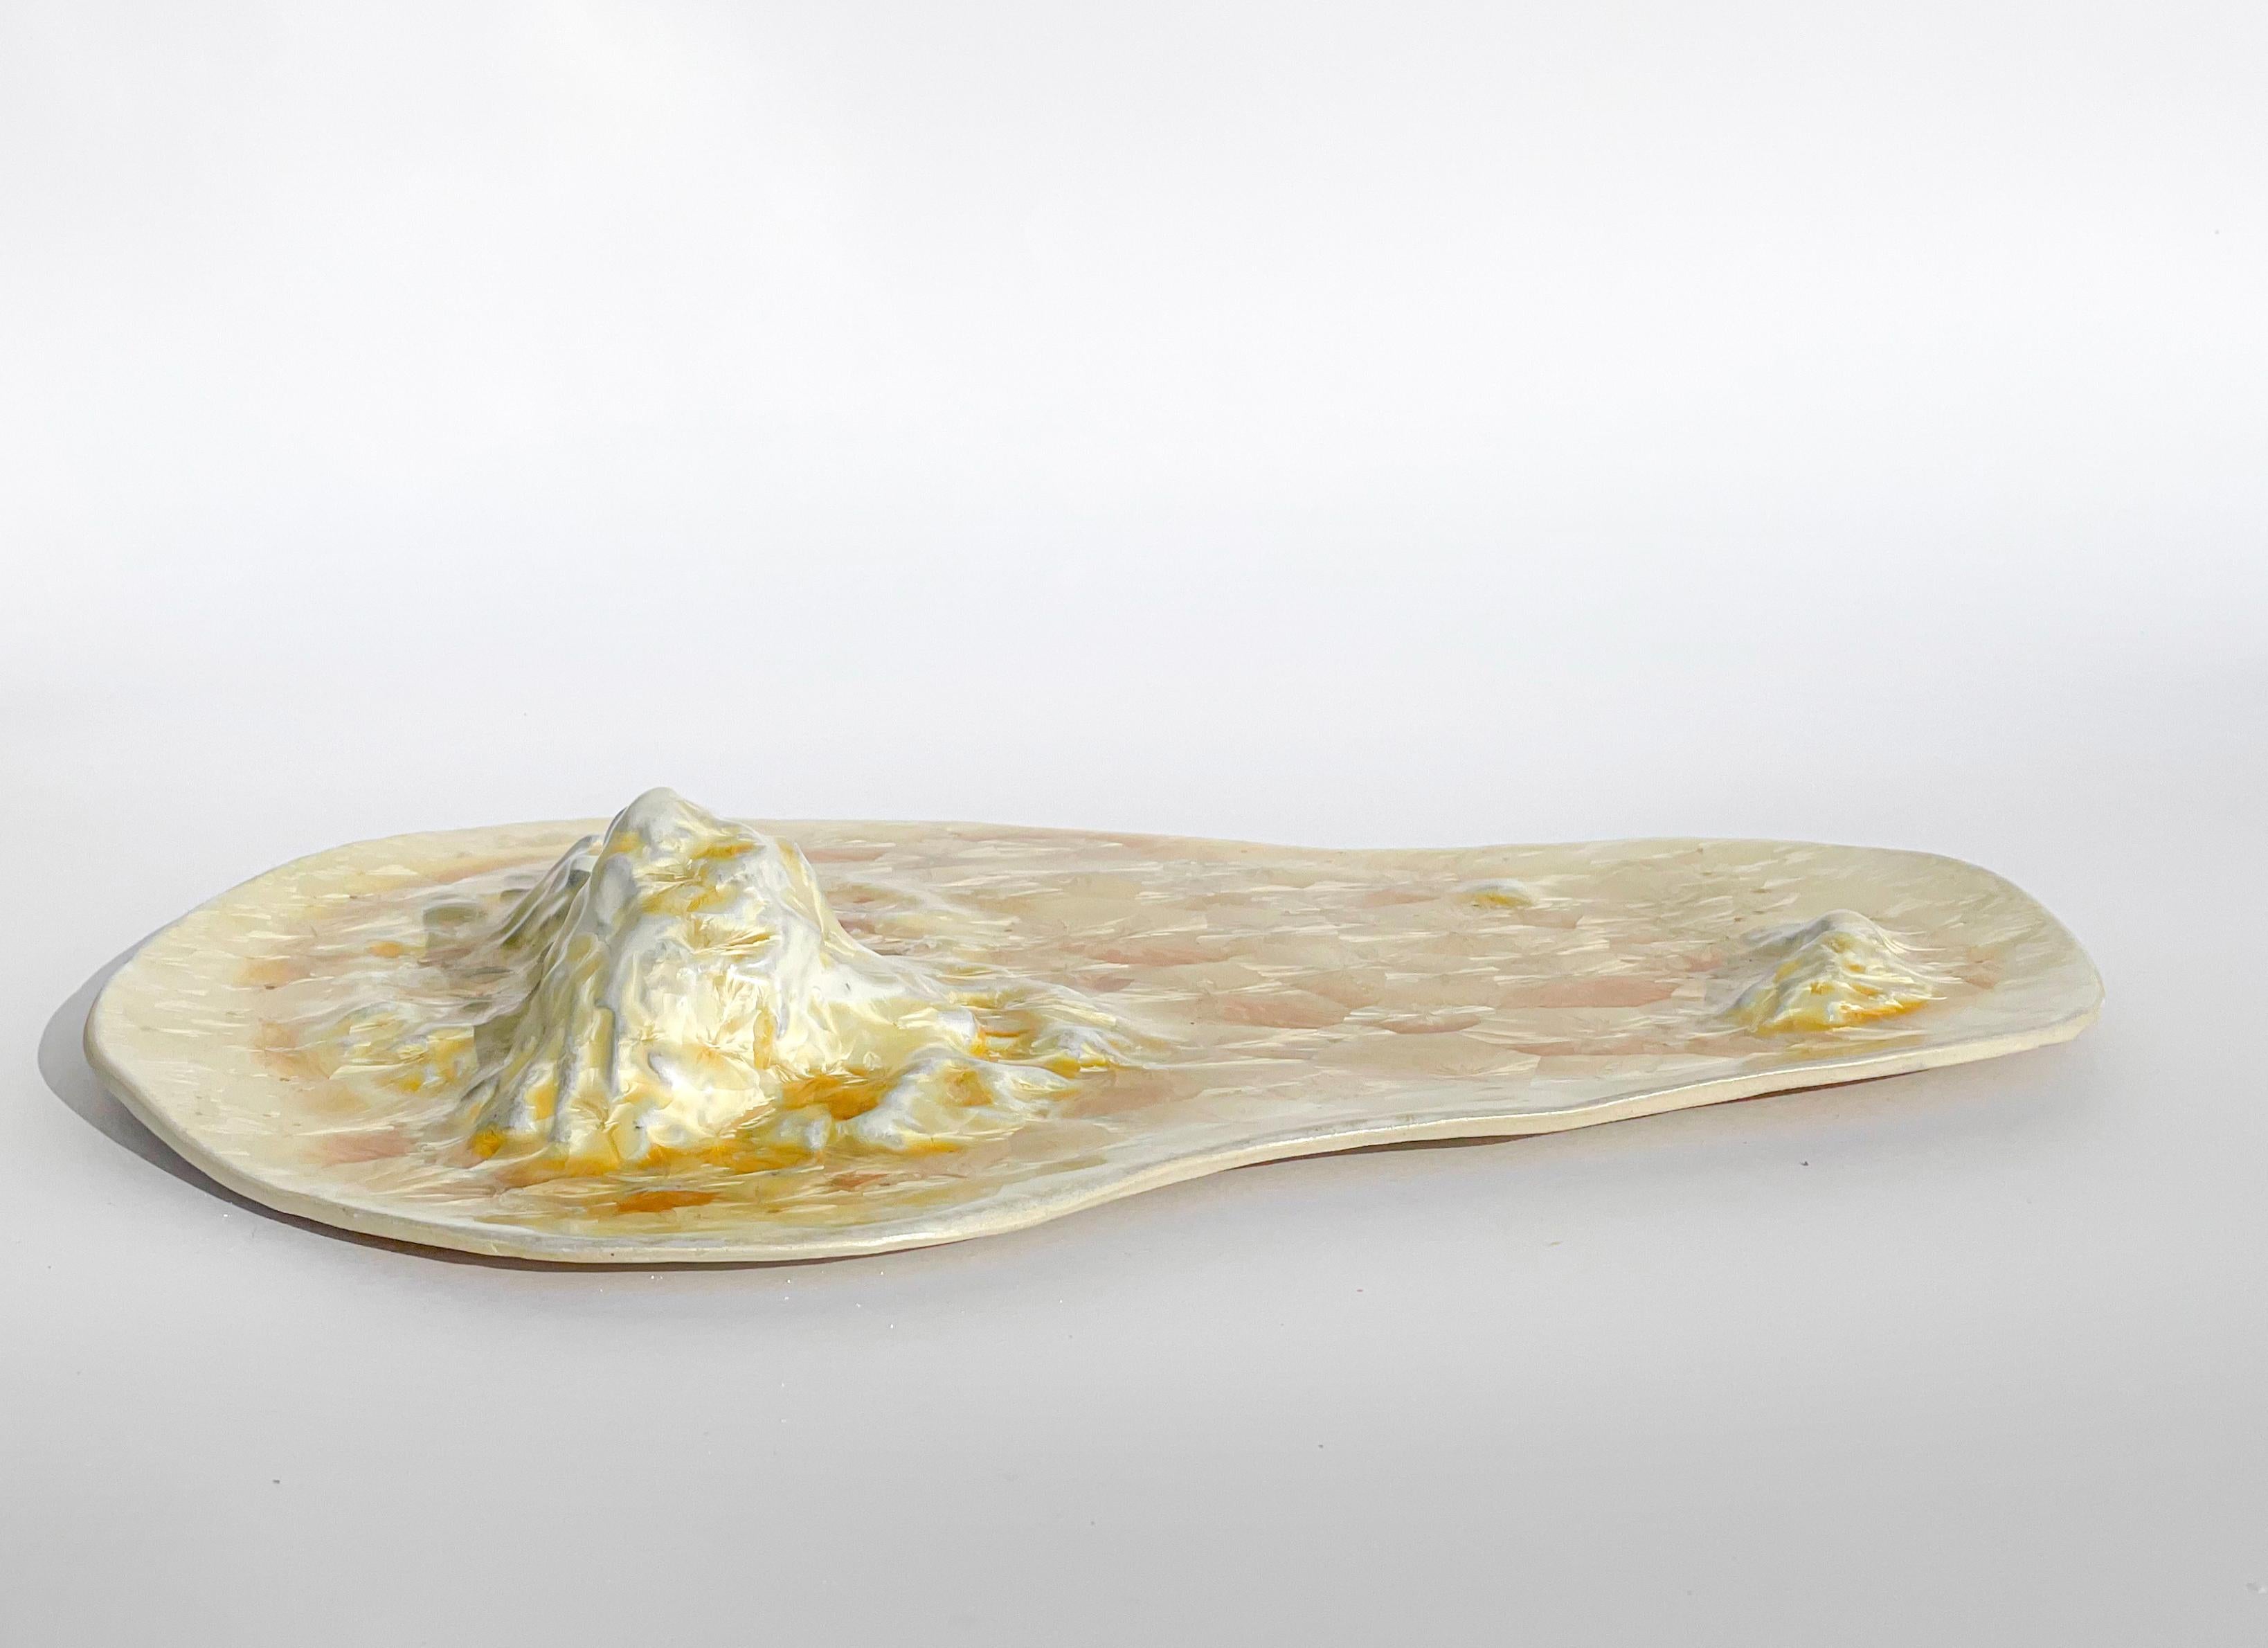 Glazed Unique Sculptural 'Gongshi' Plates N0.9 Objet d'Art Crystalline For Sale